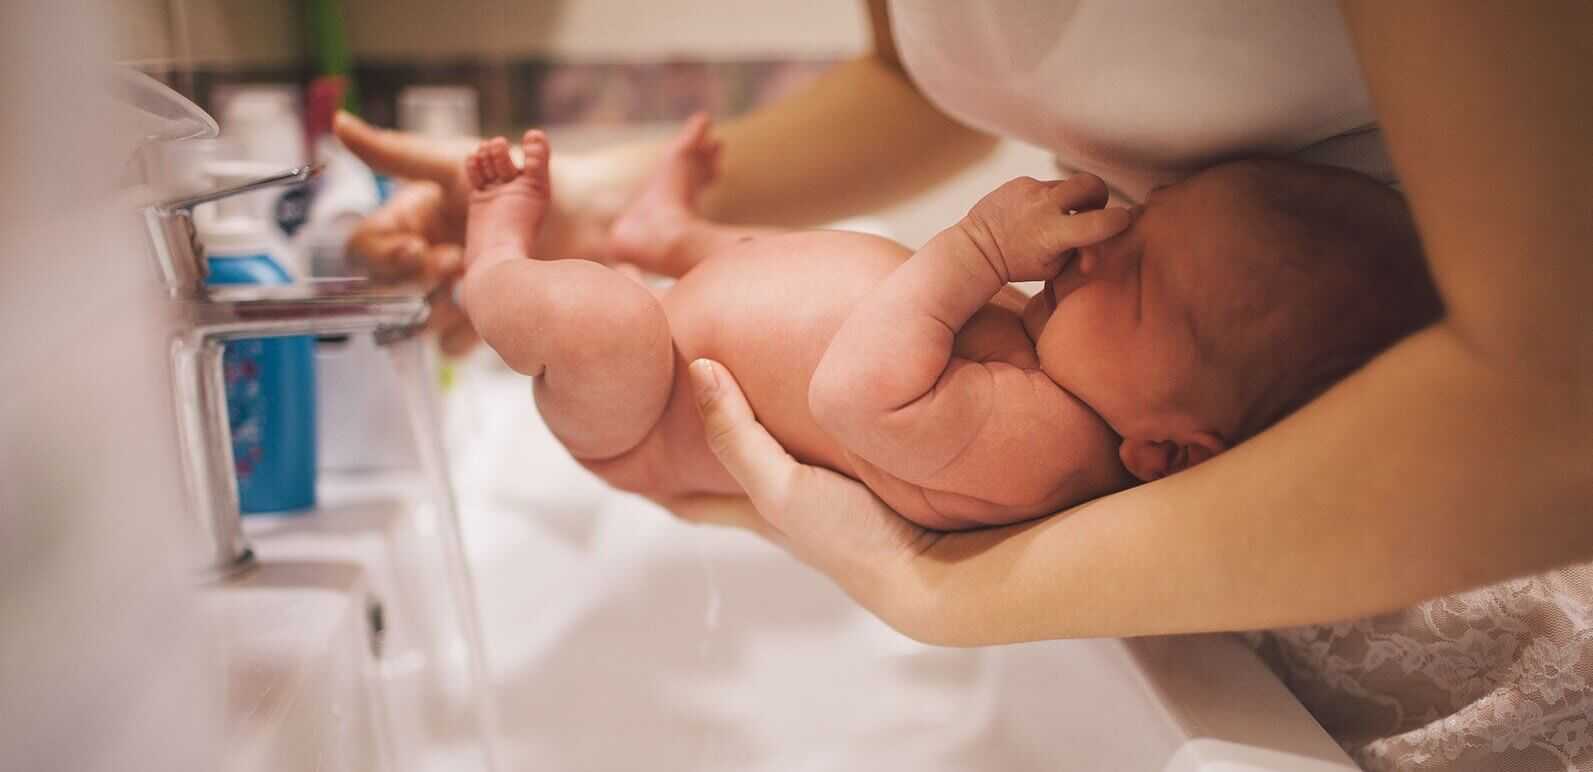 Как ухаживать за новорожденным ребенком и как правильно обрабатывать малыша